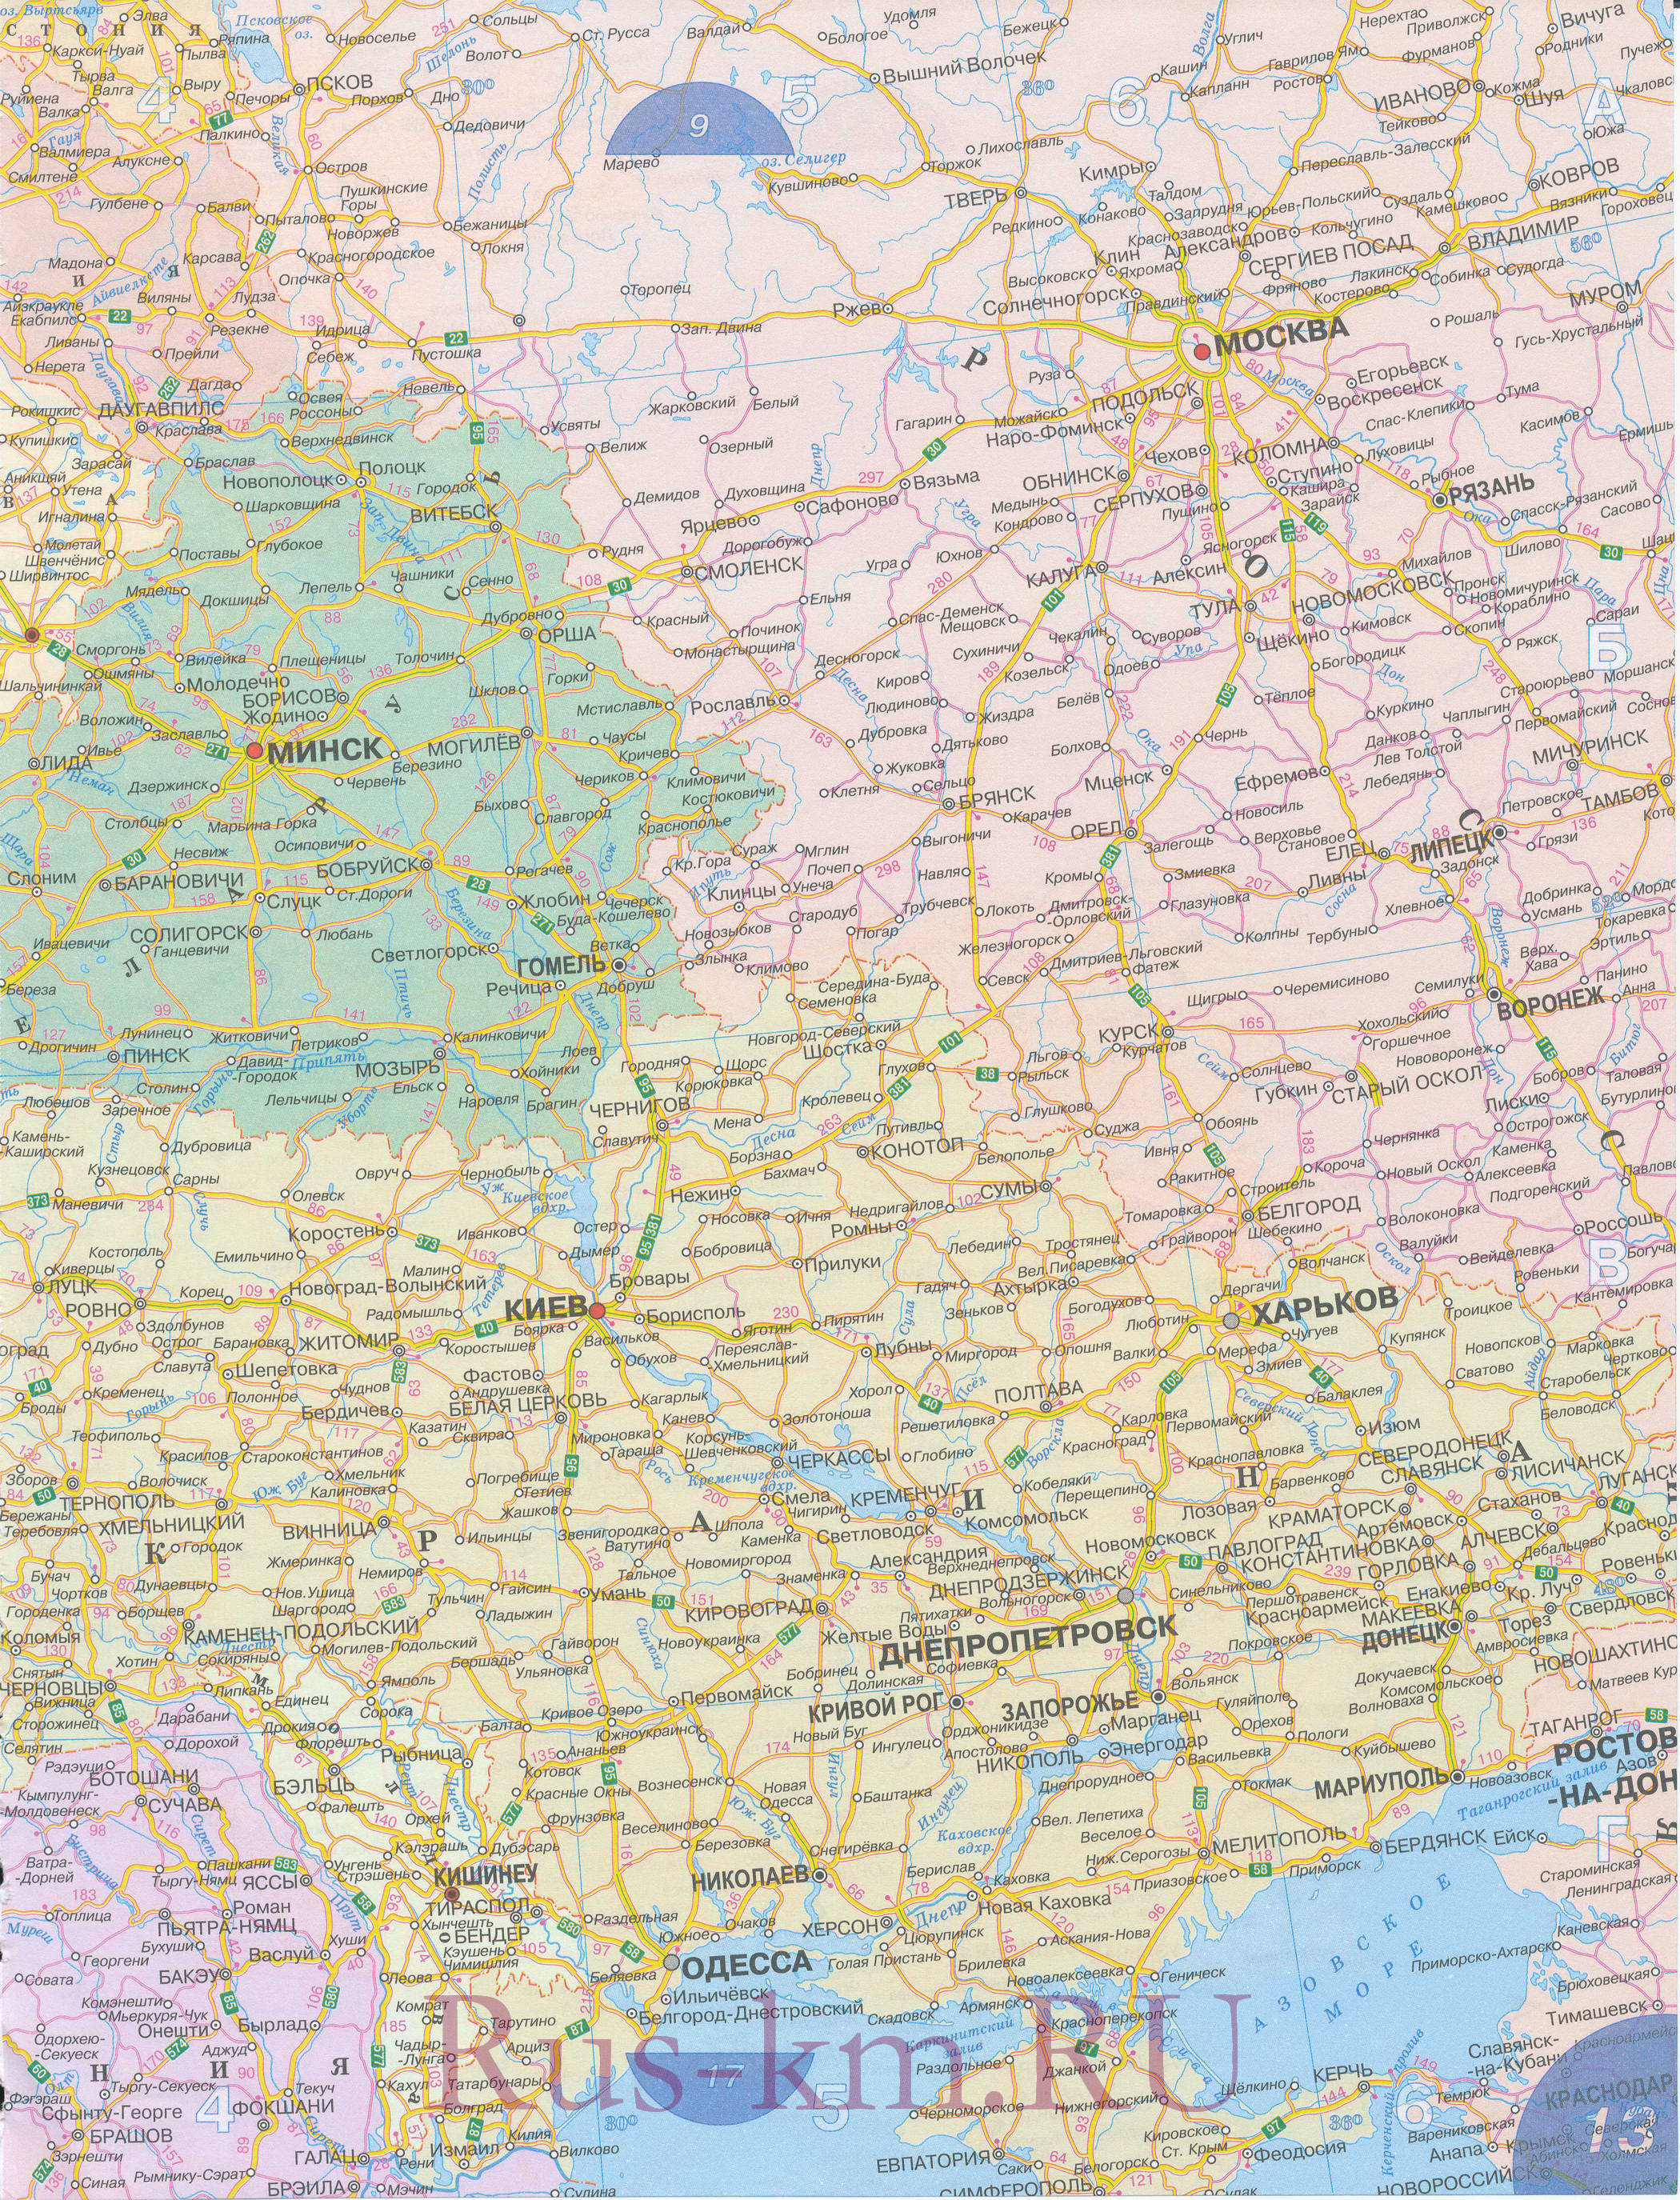 Беларусь и Украина на карте Европы. Подробная карта дорог Беларуси и Украины, A0 - 